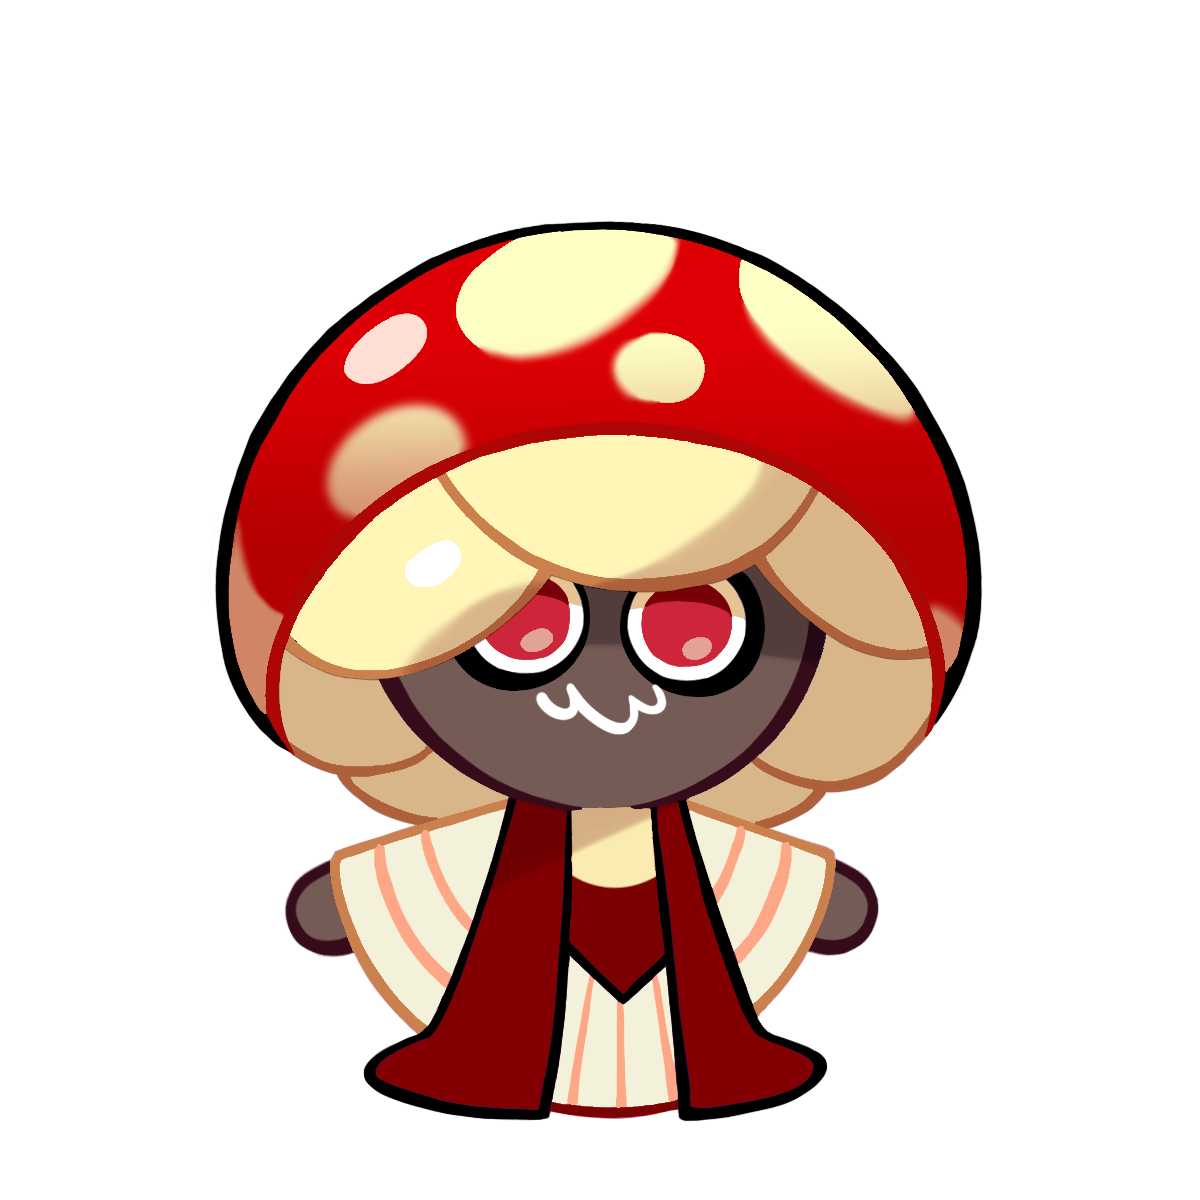 Poison mushroom cookie